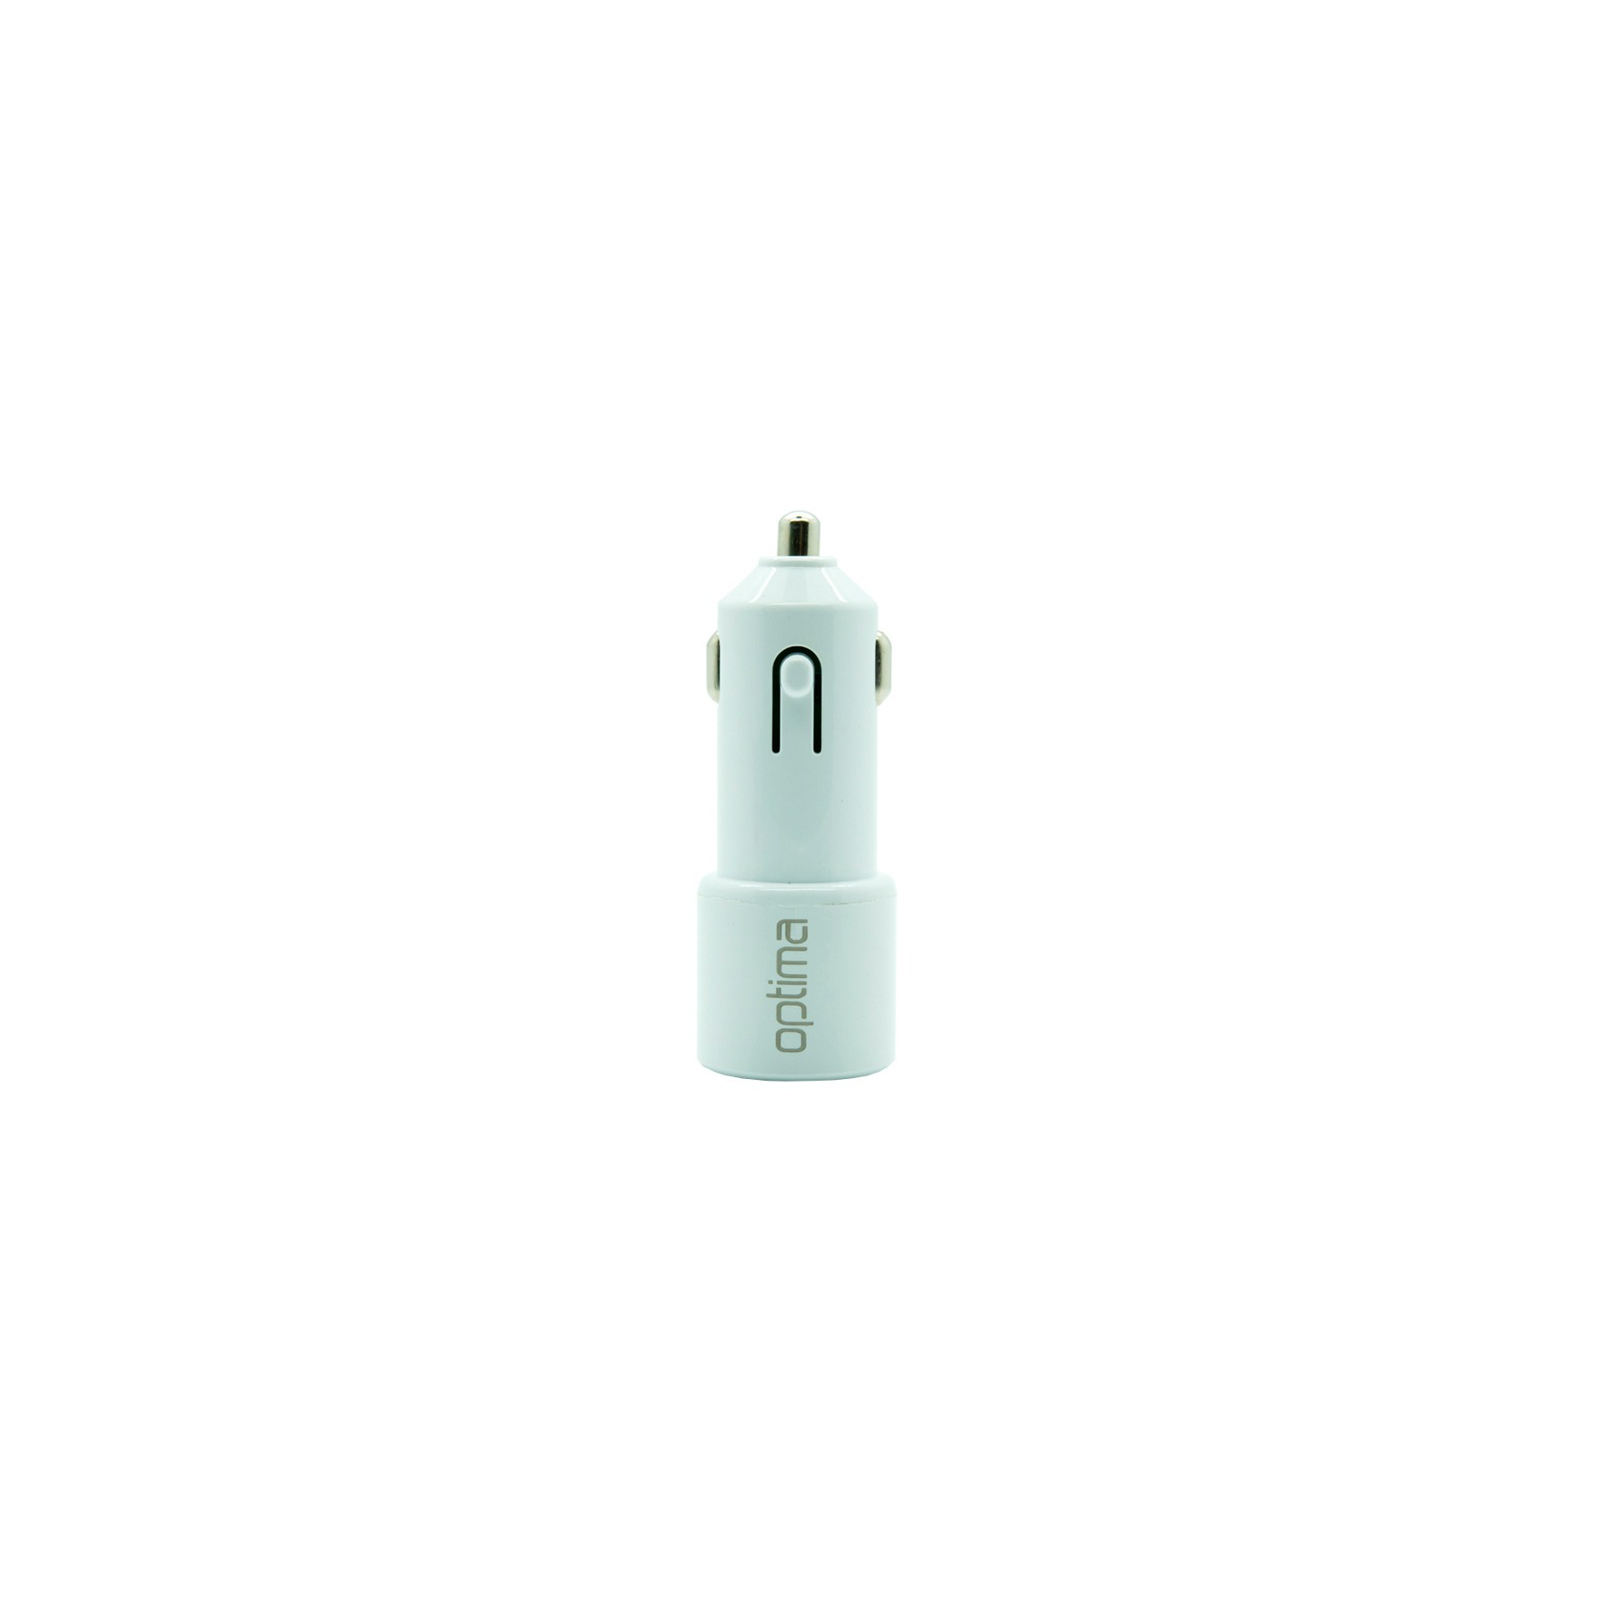 Зарядний пристрій Optima 2*USB (2.1A) + cable iPhone 5 White (45089)